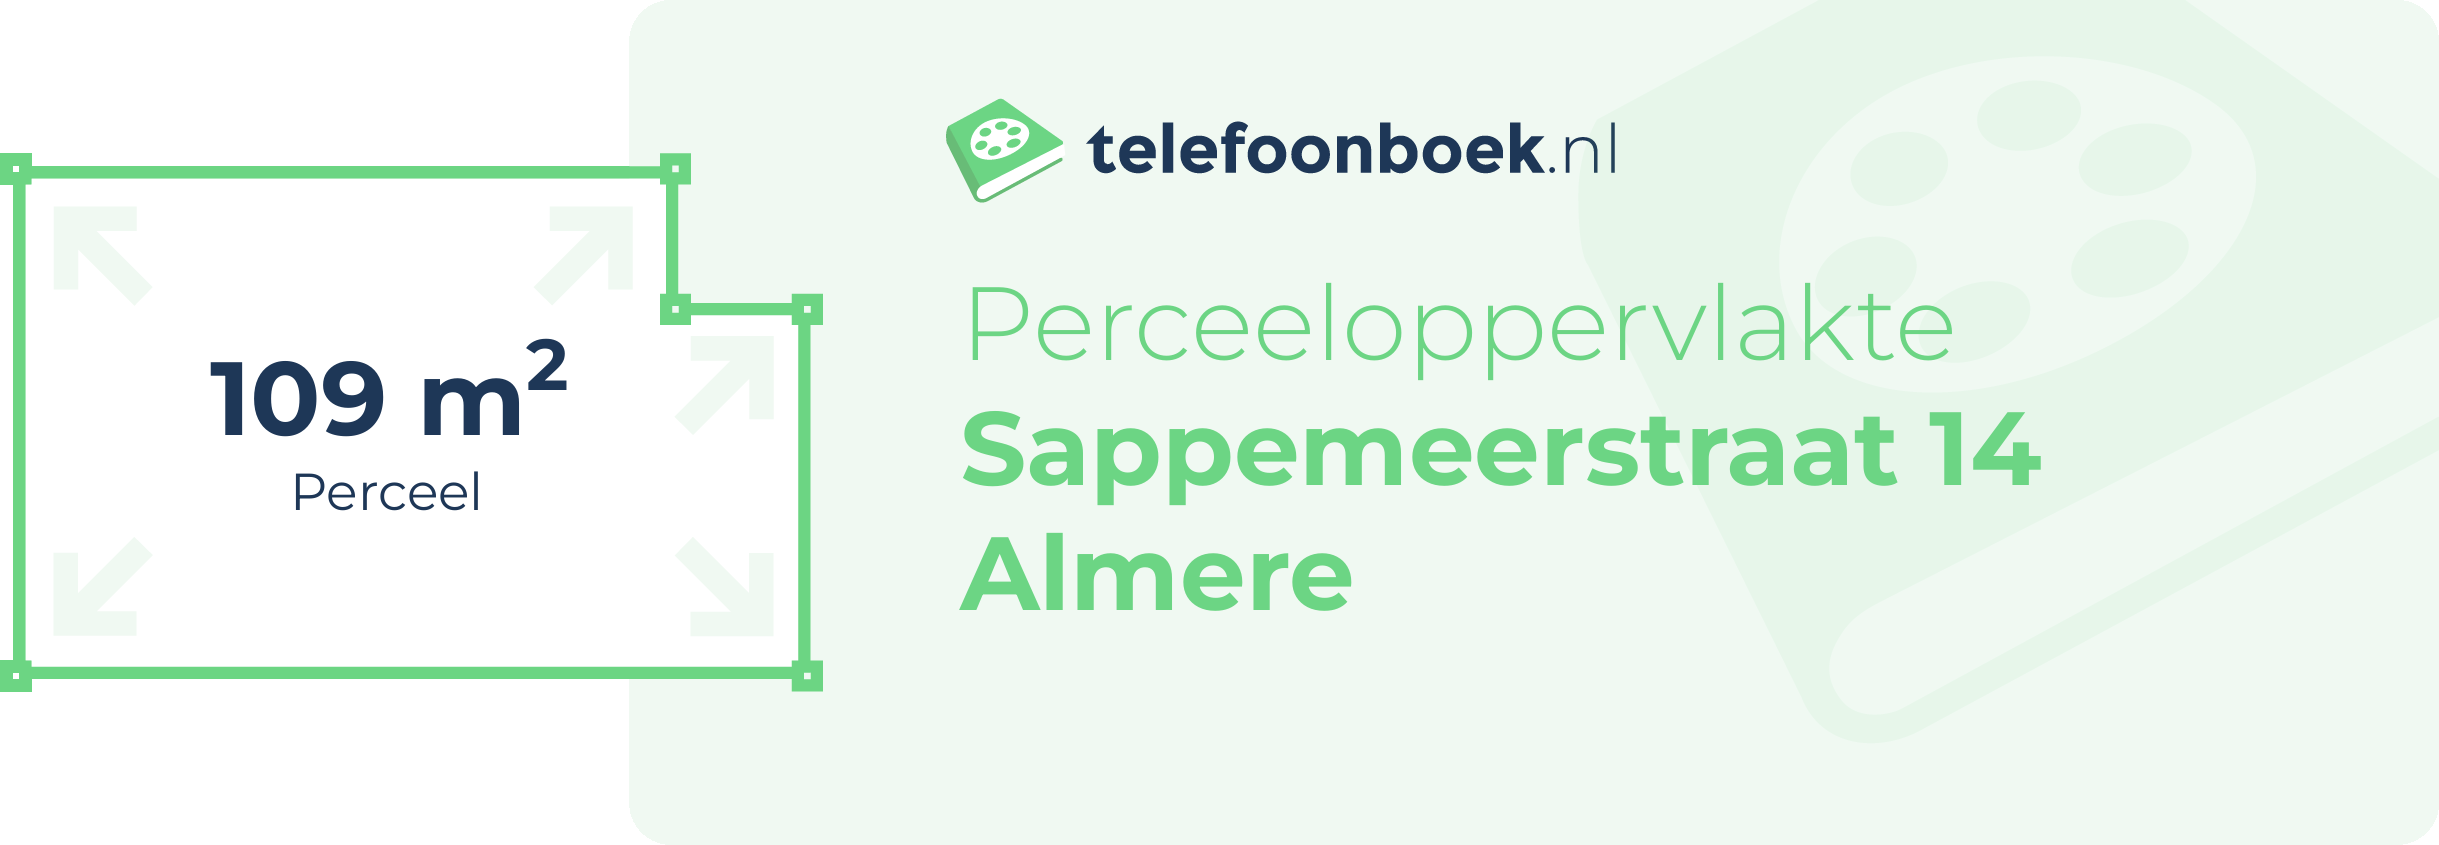 Perceeloppervlakte Sappemeerstraat 14 Almere